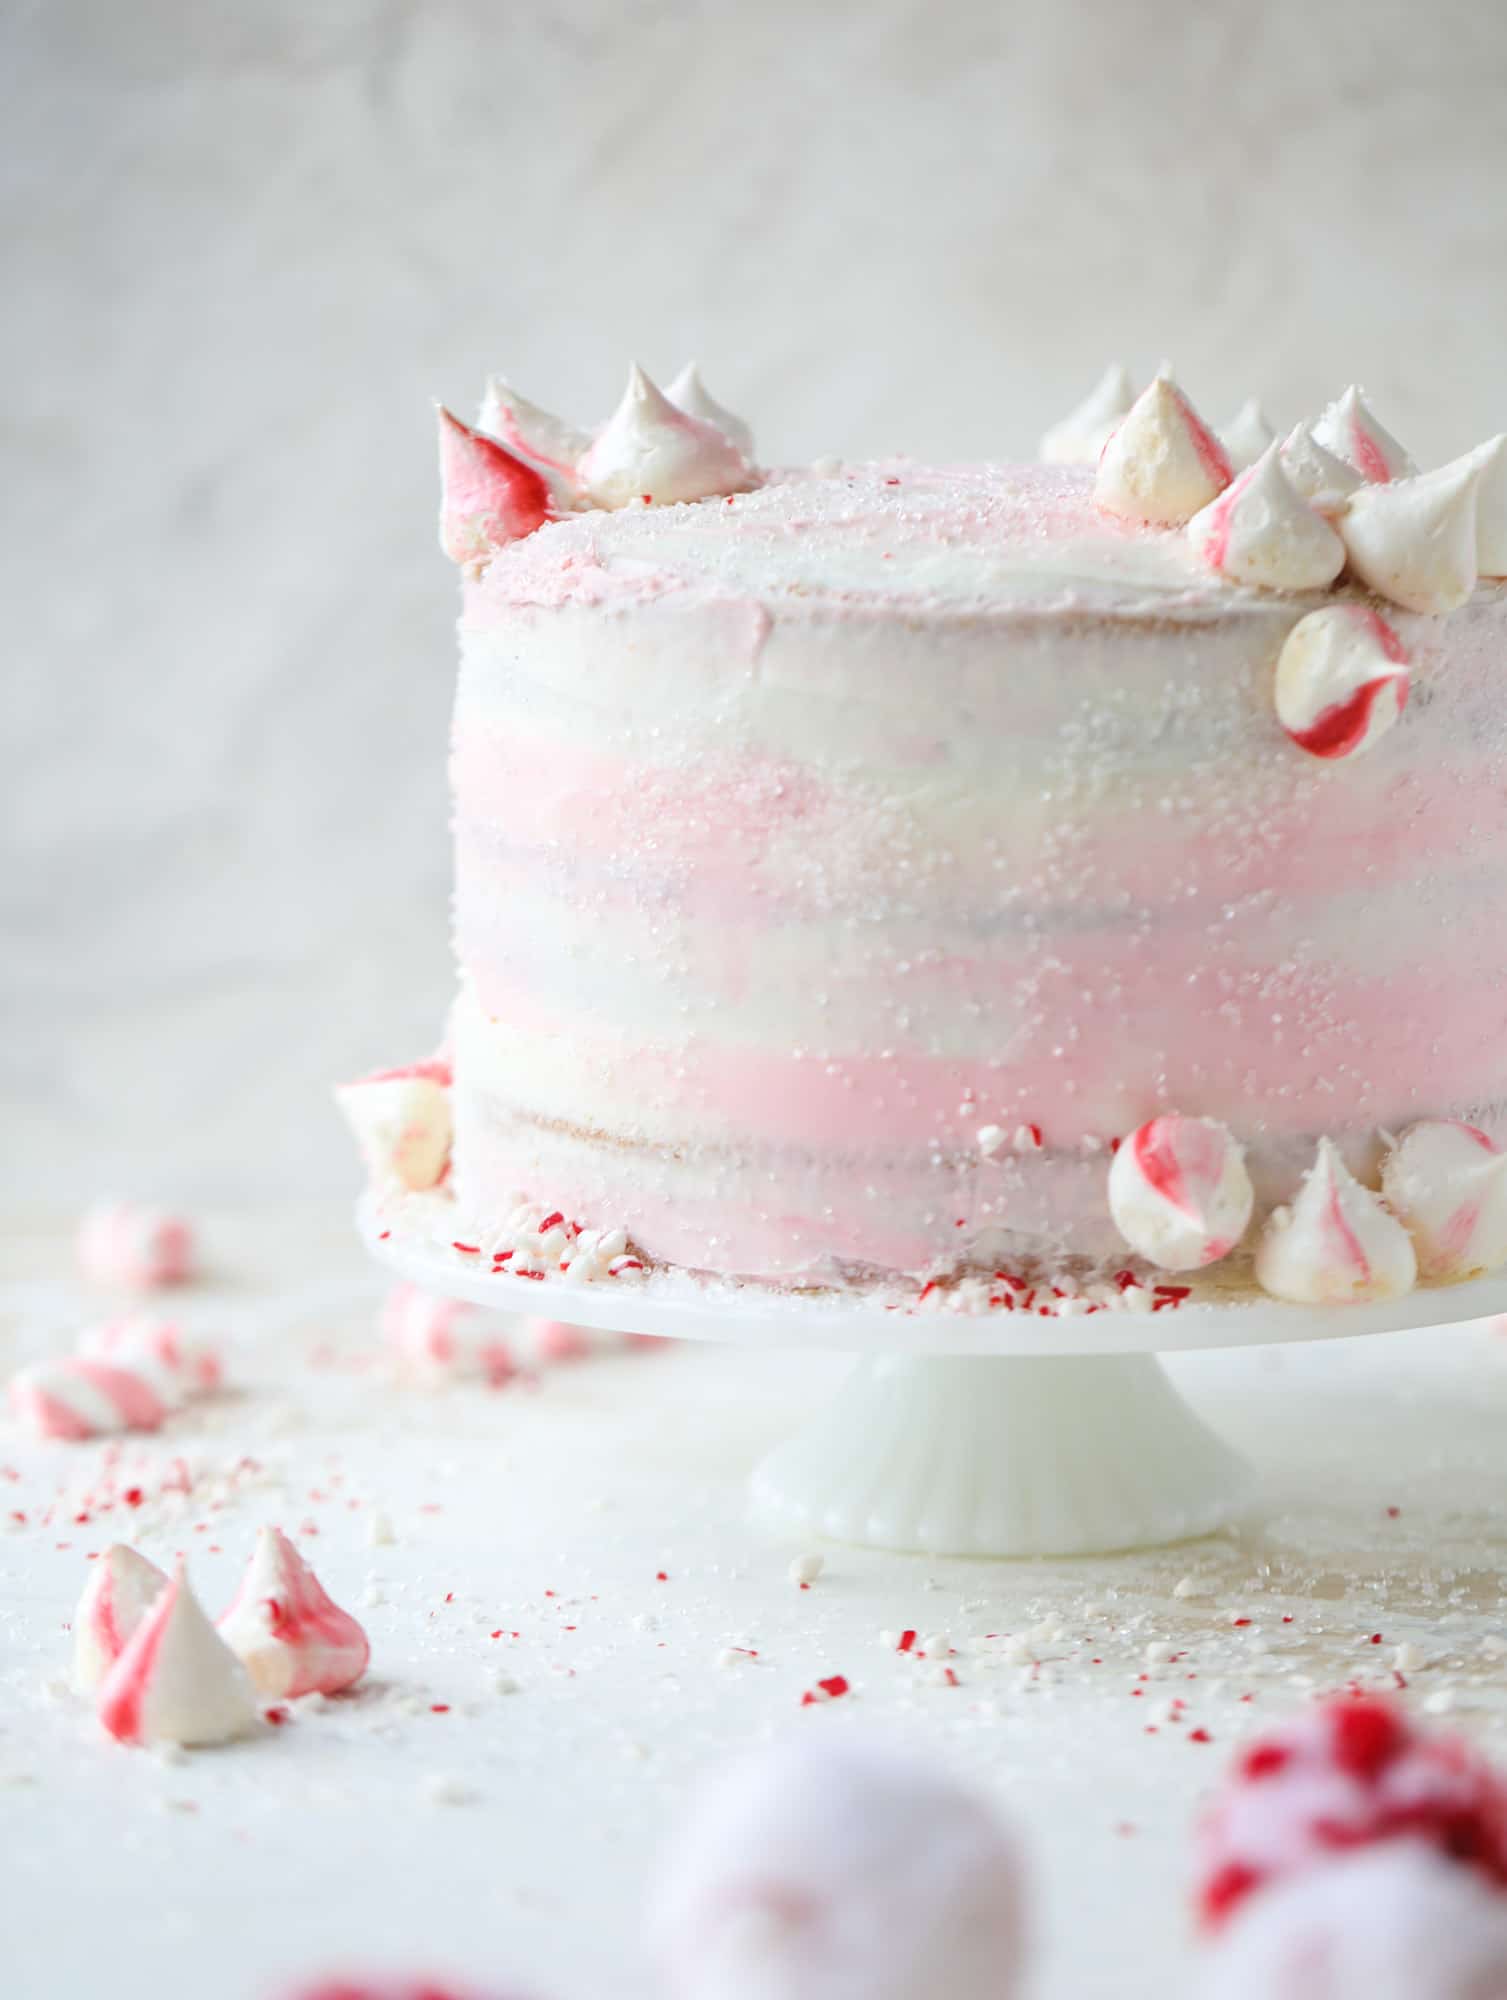 这个粉色薄荷蛋糕是节日和美味的节日!香草蛋糕糖霜和薄荷奶油芝士糖霜，上面覆盖着闪亮的糖和薄荷蛋白霜。不能可爱!我# pinkpeppermint #蛋糕